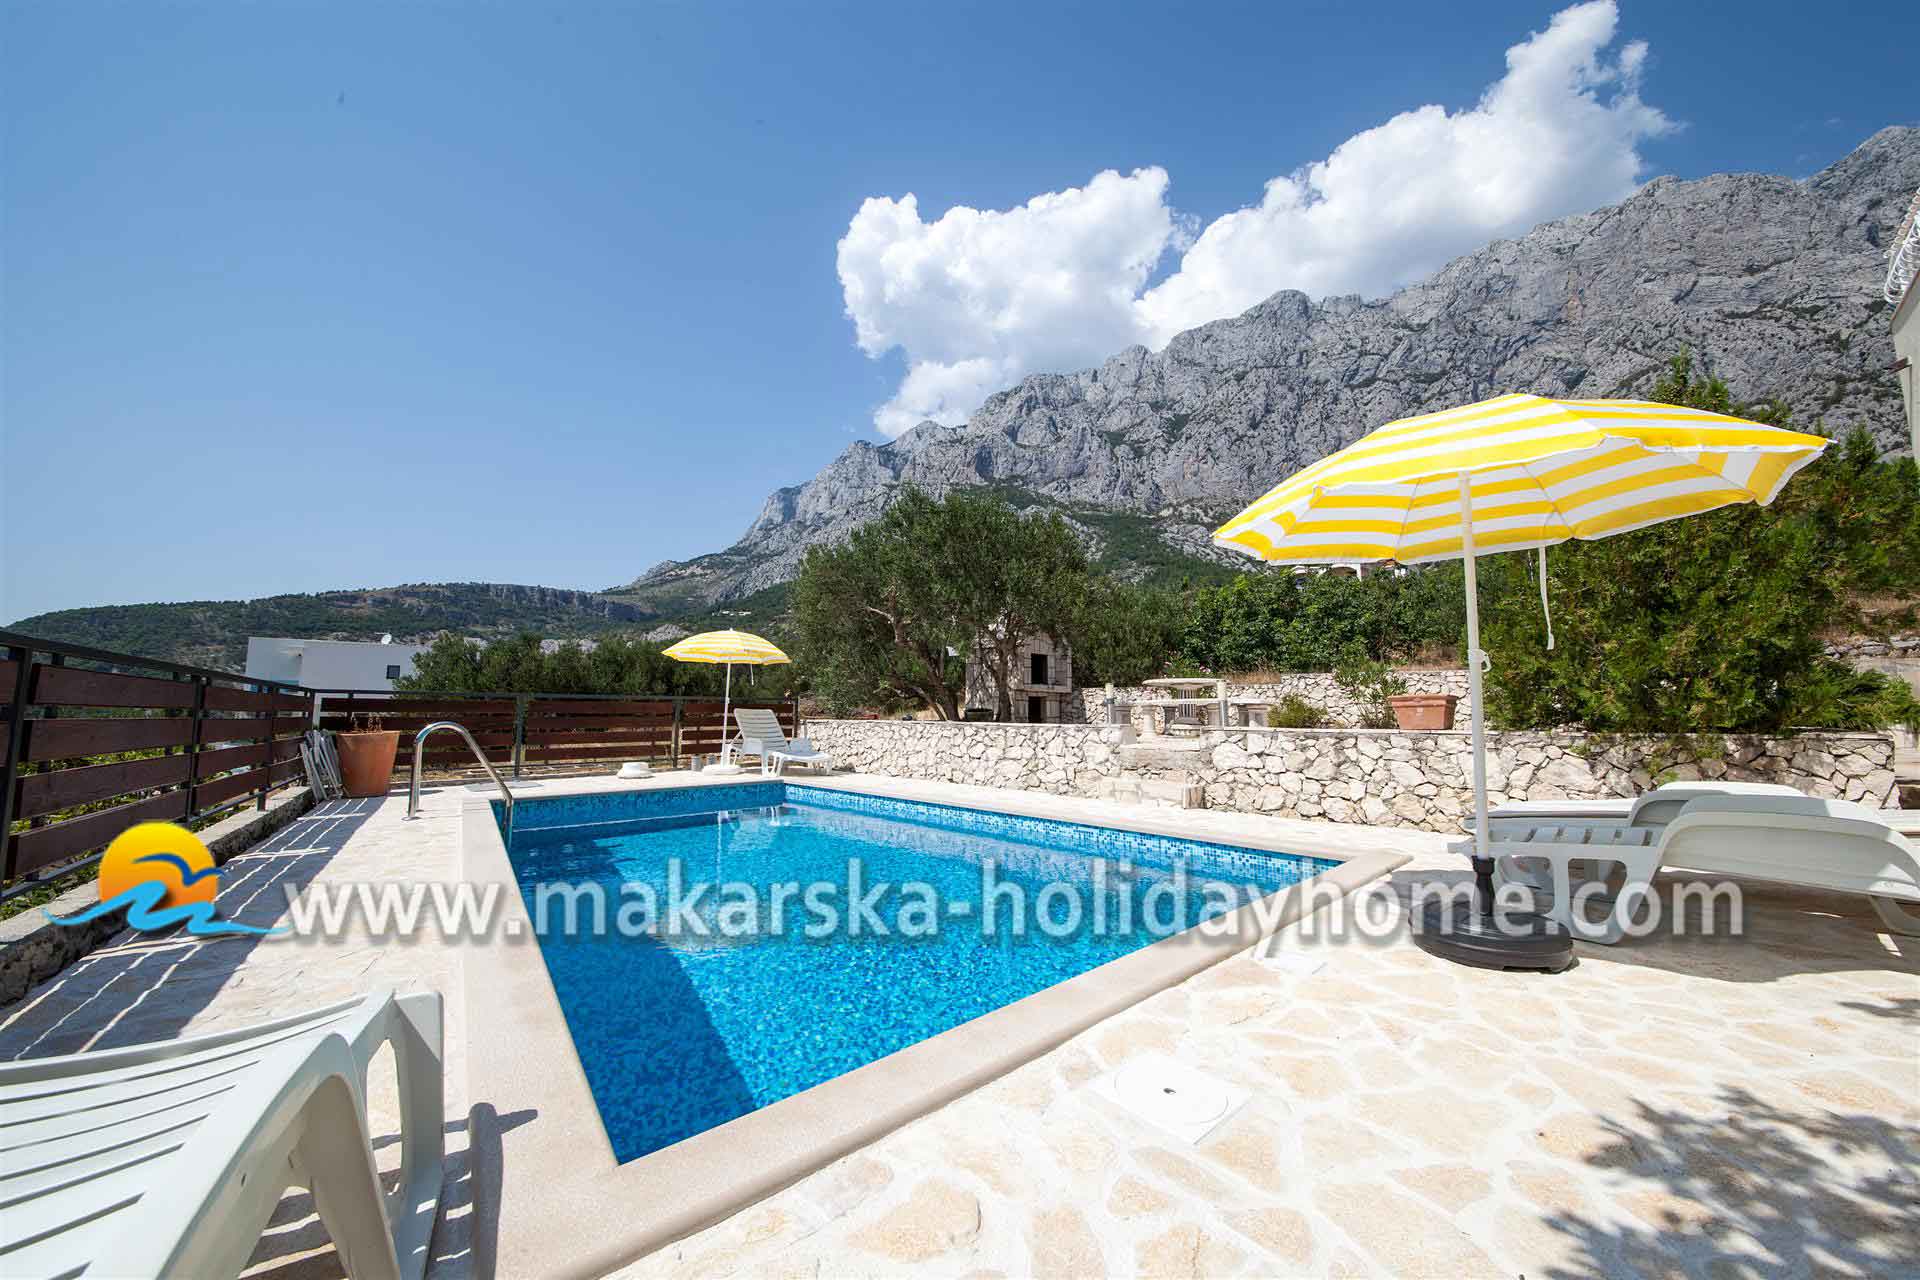 Holiday villa with Pool in Makarska - Villa Leon / 02